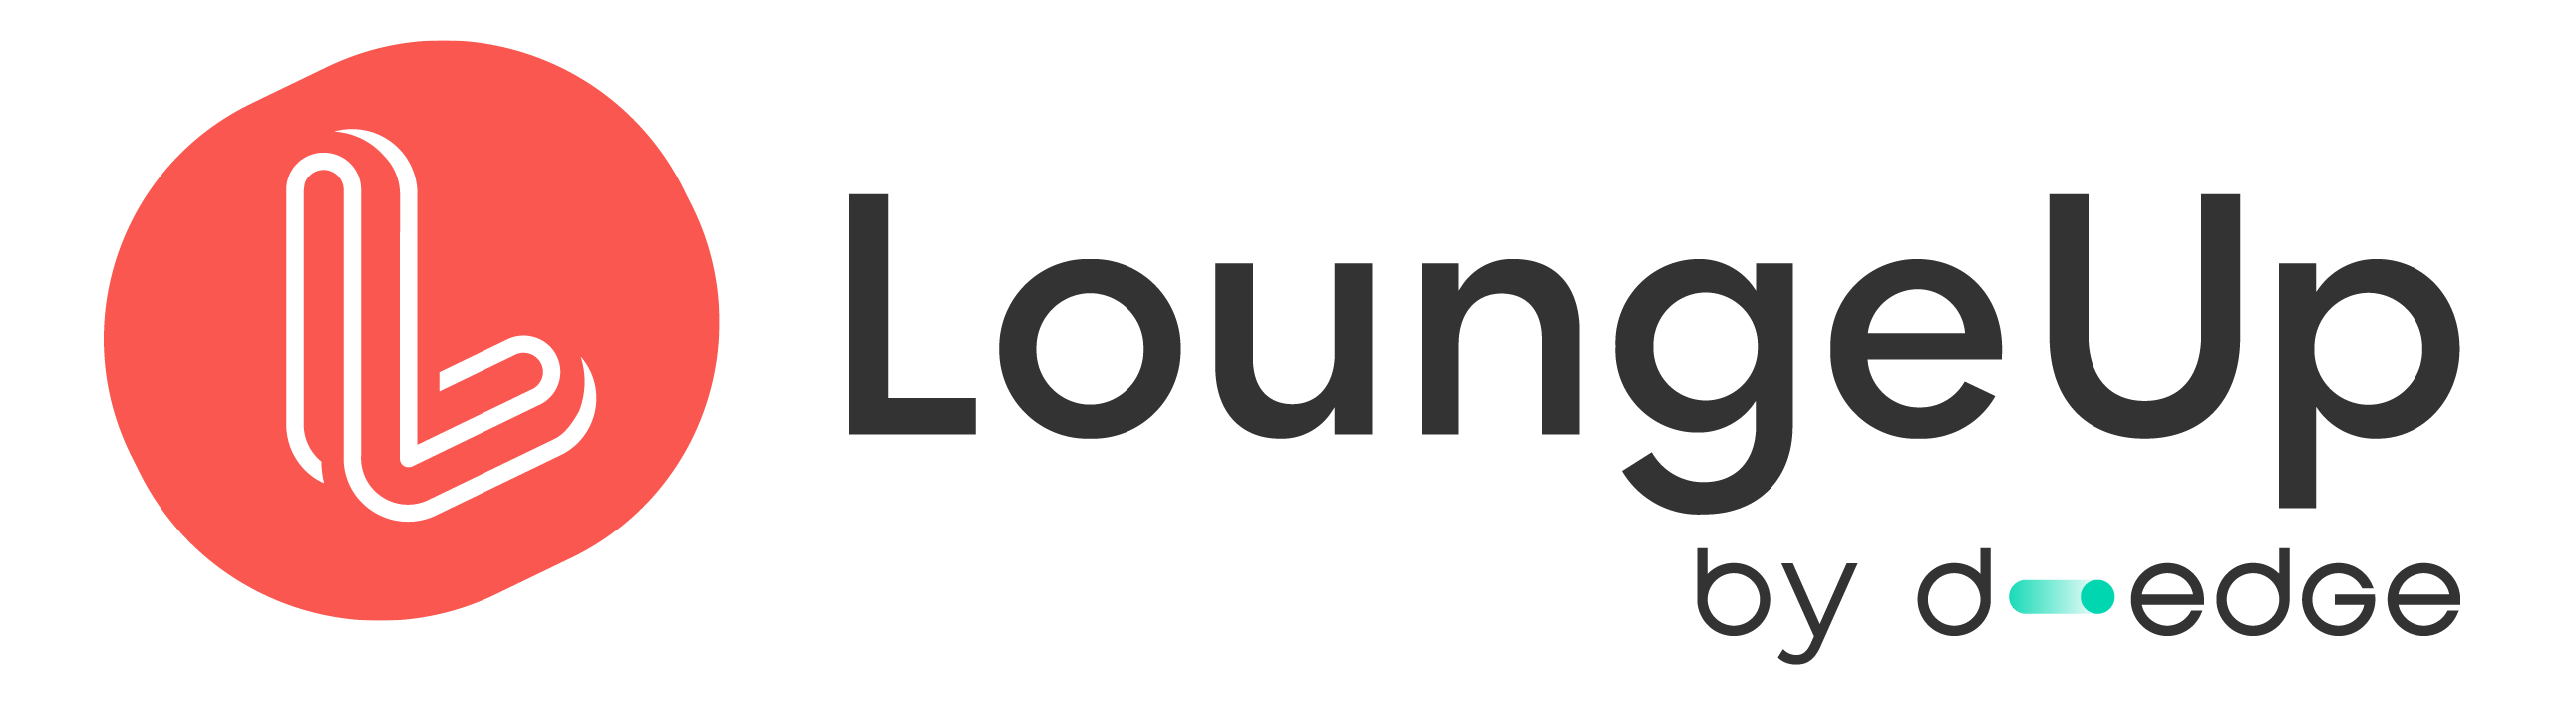 LoungeUp